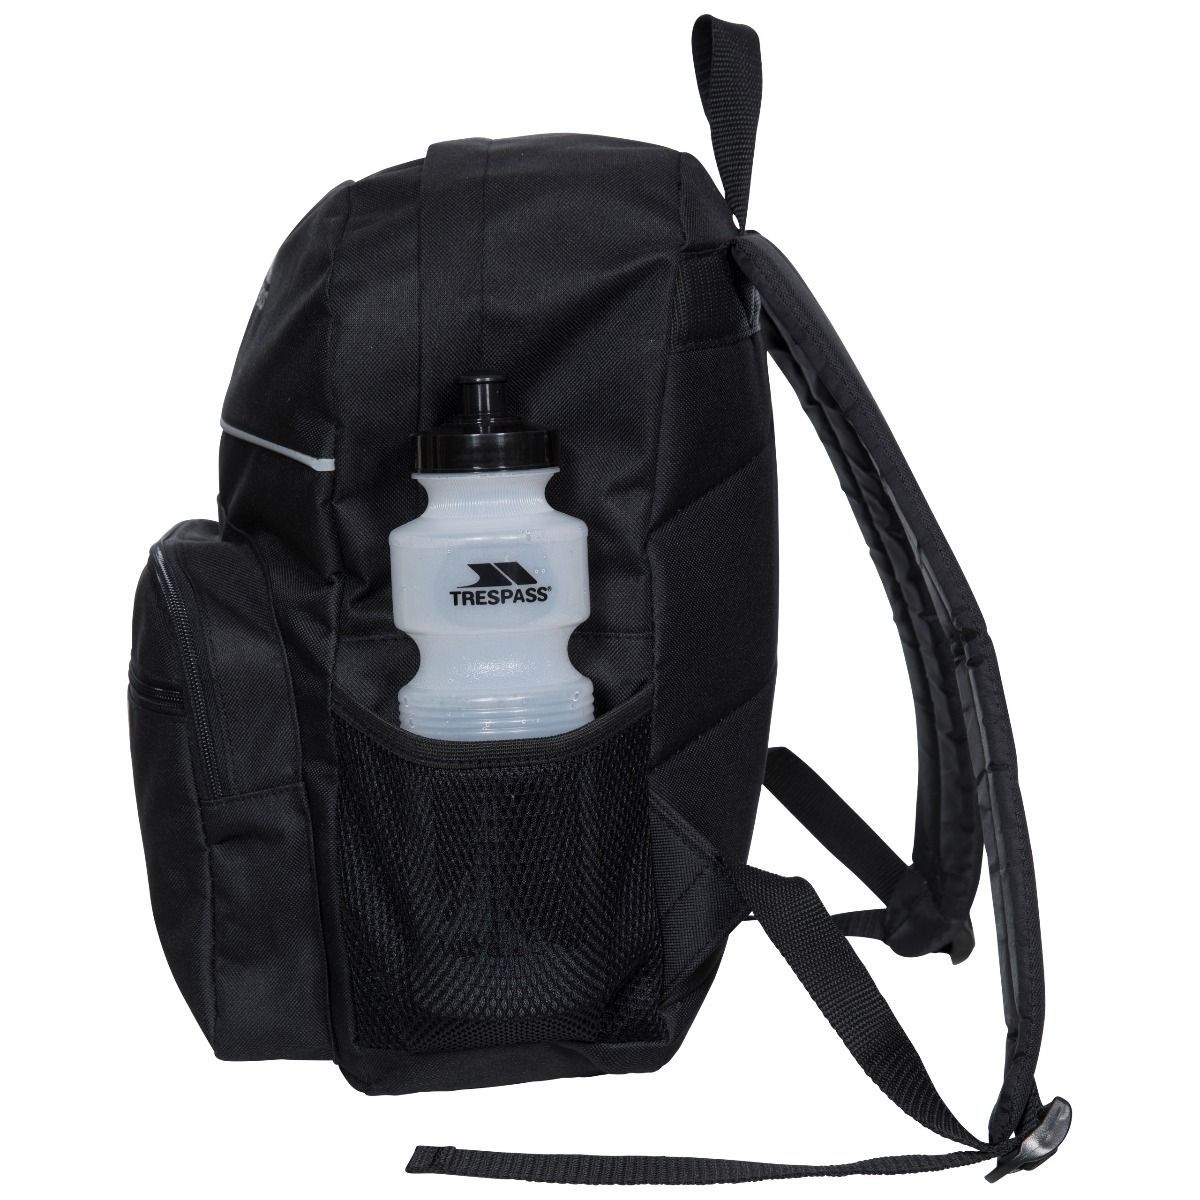 Material: 100% polyester. Kids 16 Litre backpack. 3 External pockets and bottle strap. Internal organiser pocket. Reflective panels. Padded shoulder straps.